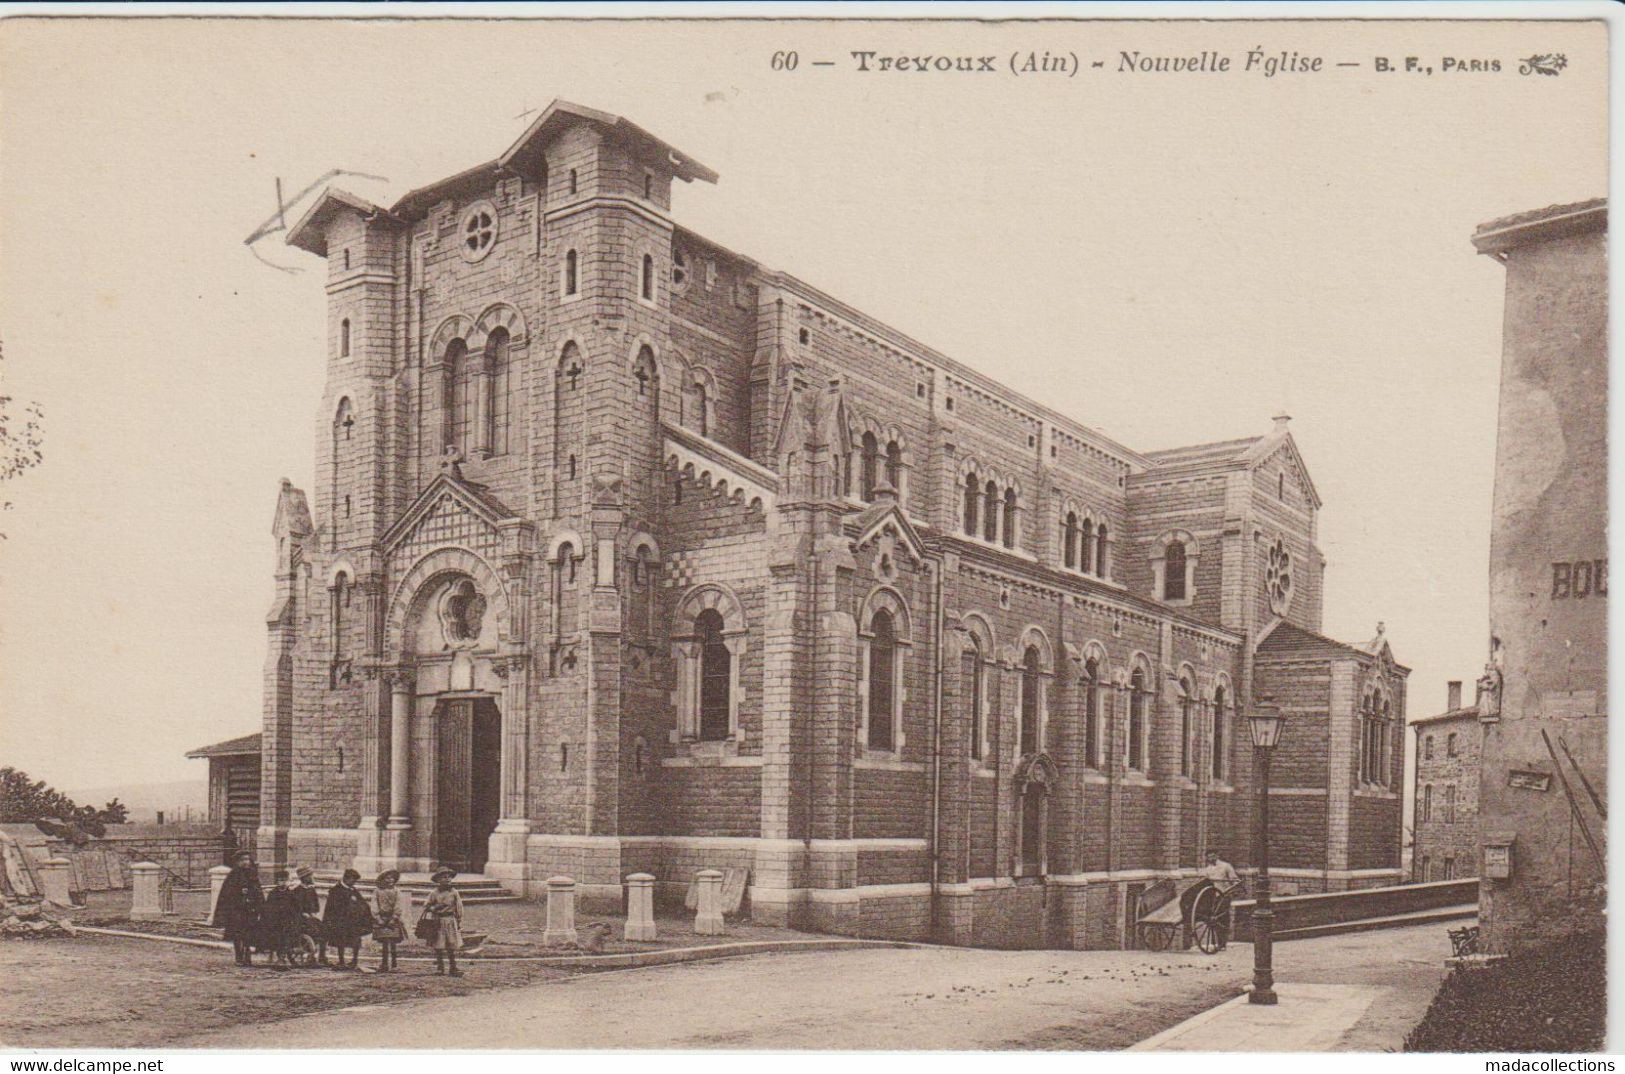 Trevoux (01 - Ain) Nouvelle Eglise - Trévoux